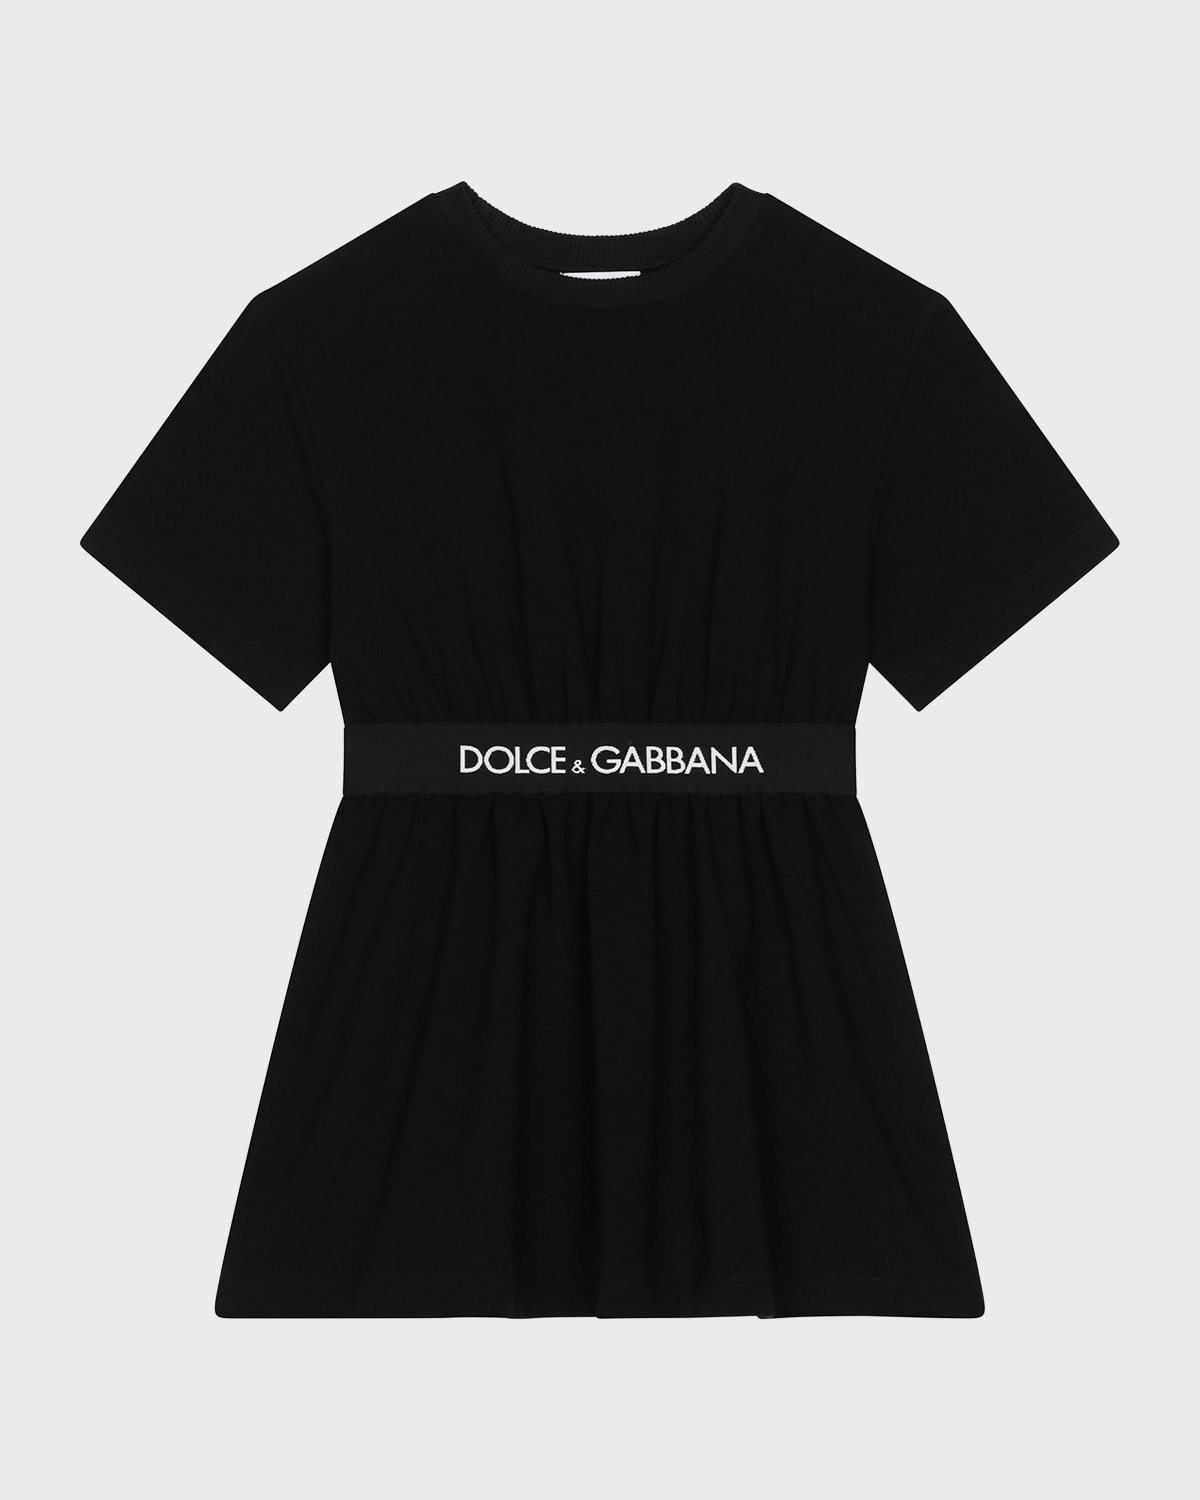 Dolce & Gabbana Kids' Little Girl's & Girl's Logo T-shirt Dress In Black